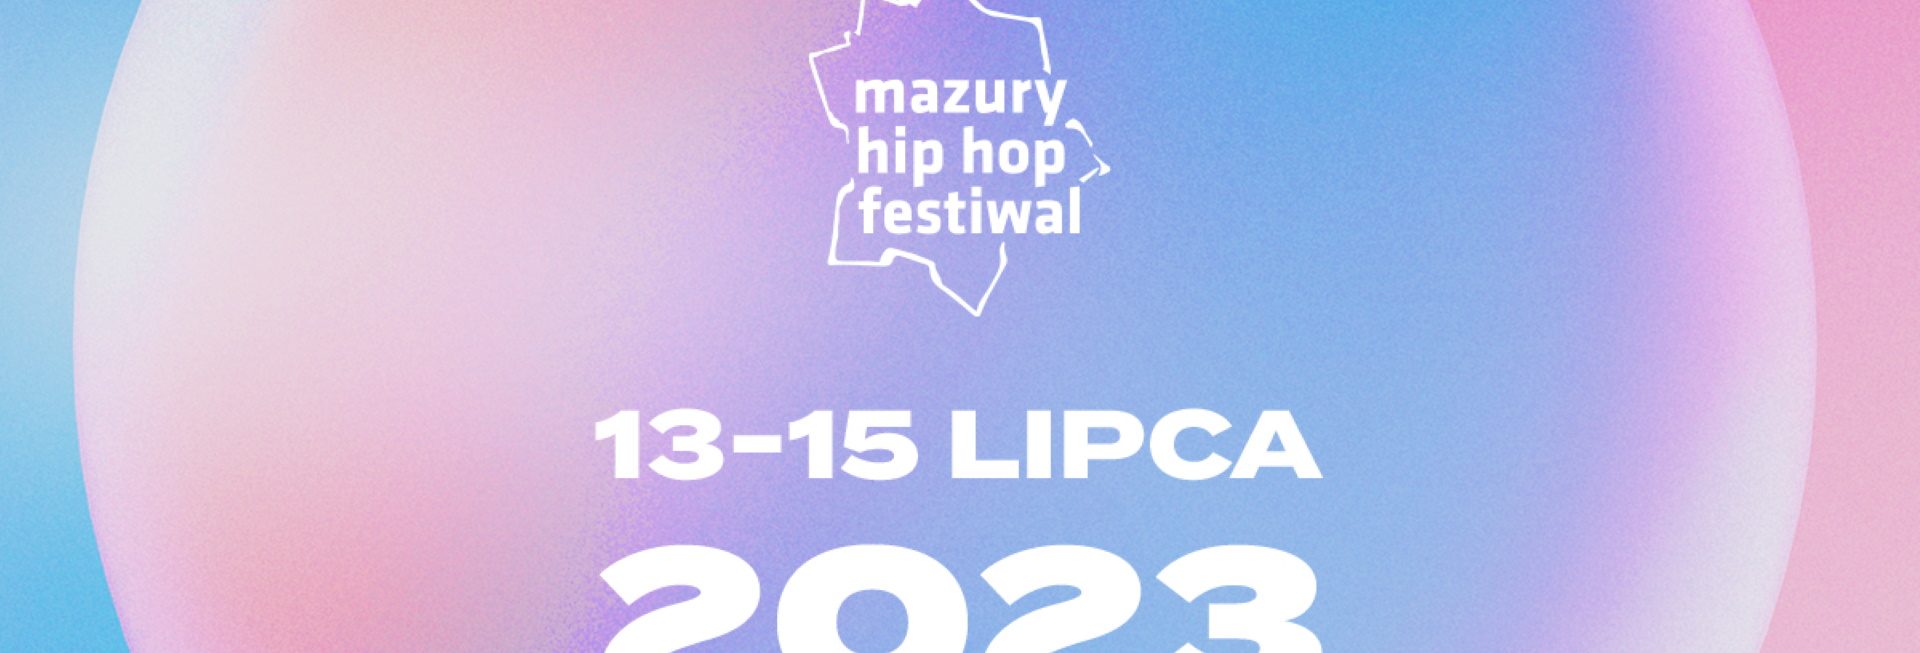 Plakat zapraszający do Giżycka na kolejną edycję Festiwalu Mazury Hip Hop Festiwal Giżycko 2023.